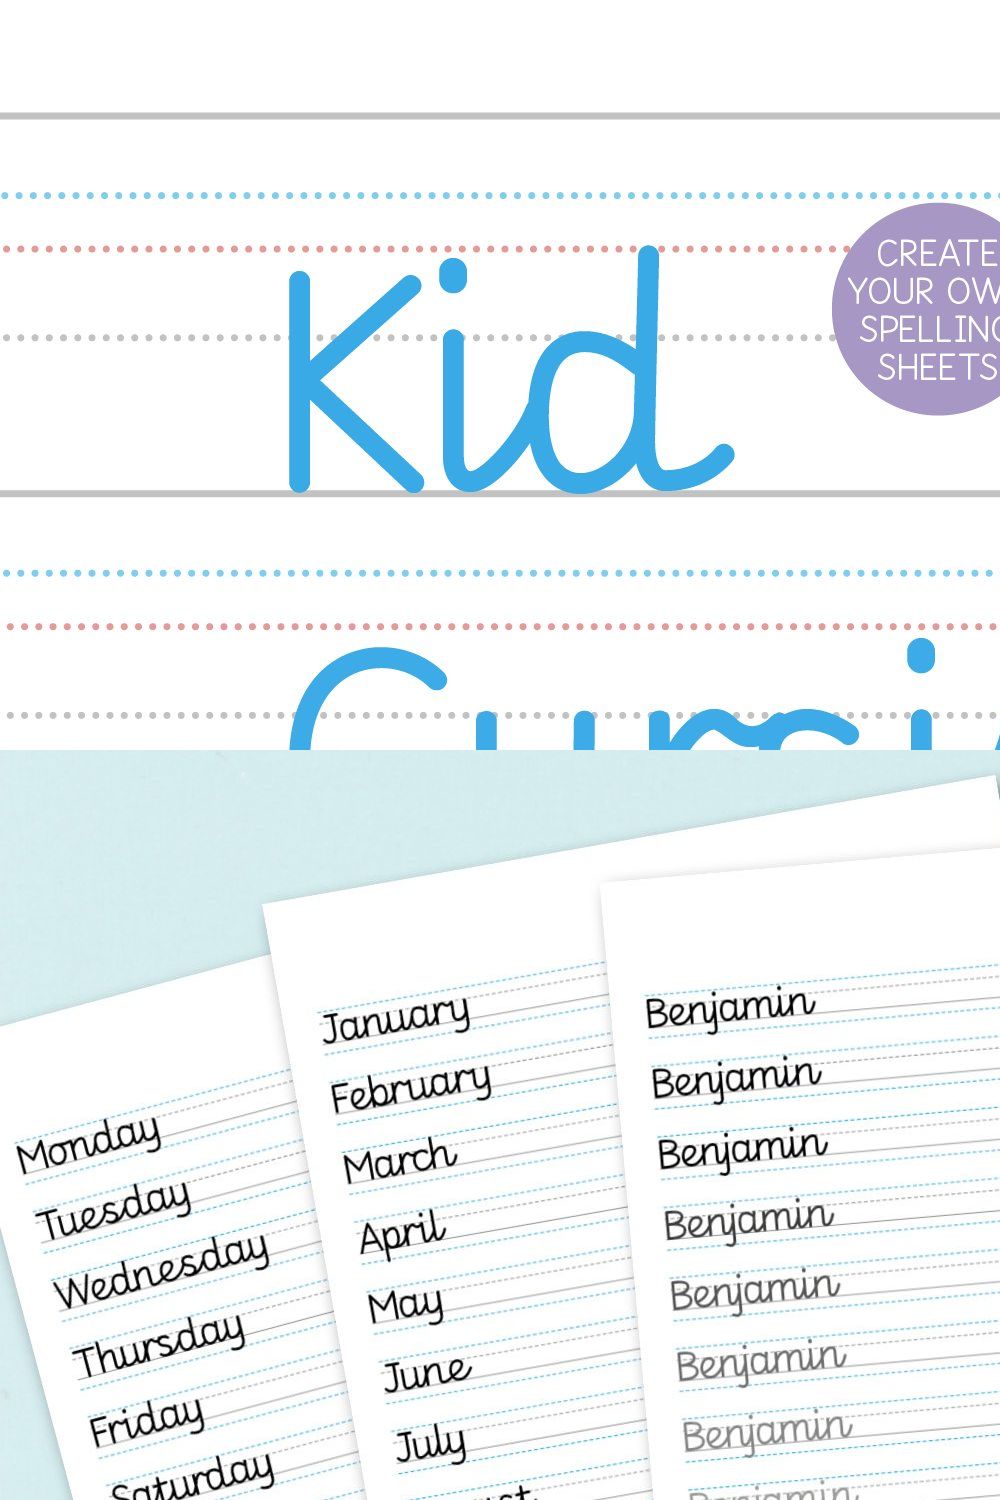 KID CURSIVE | school & teacher font pinterest preview image.